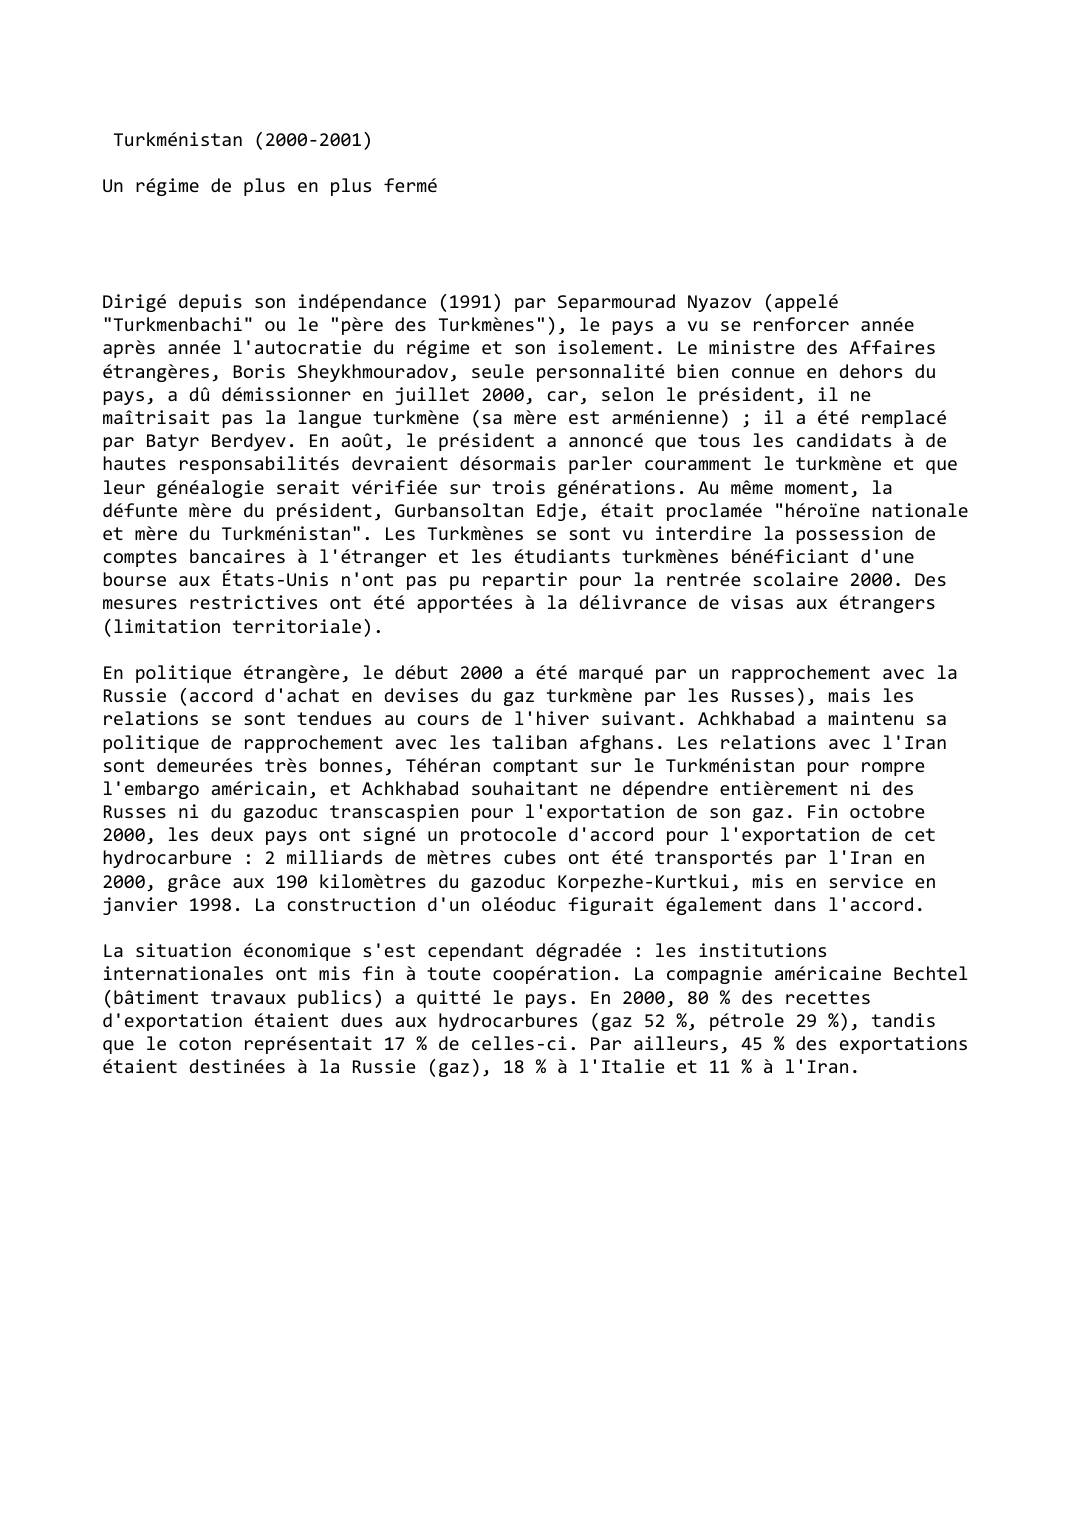 Prévisualisation du document Turkménistan (2000-2001)

Un régime de plus en plus fermé